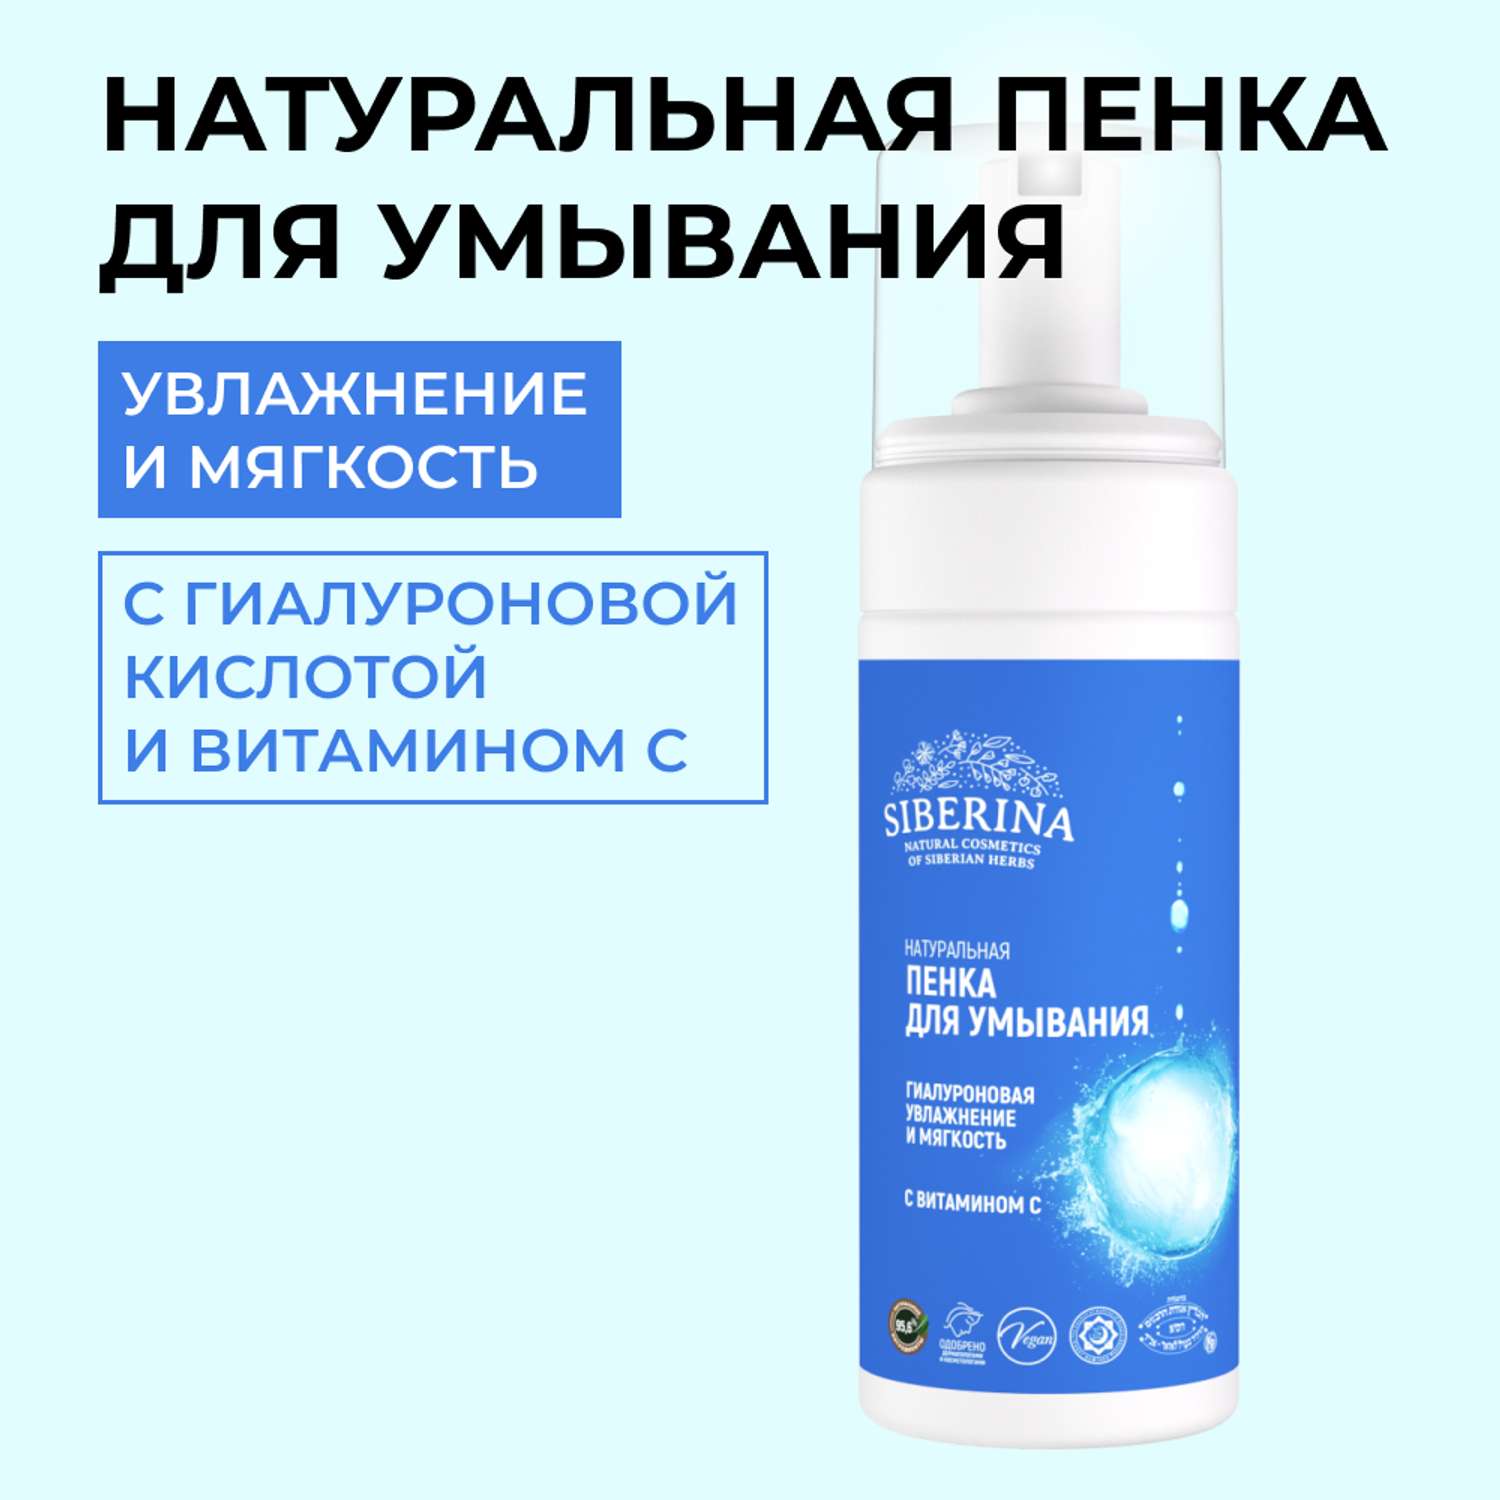 Пенка для умывания Siberina натуральная «Увлажнение и мягкость» очищающая с витамином С 150 мл - фото 1